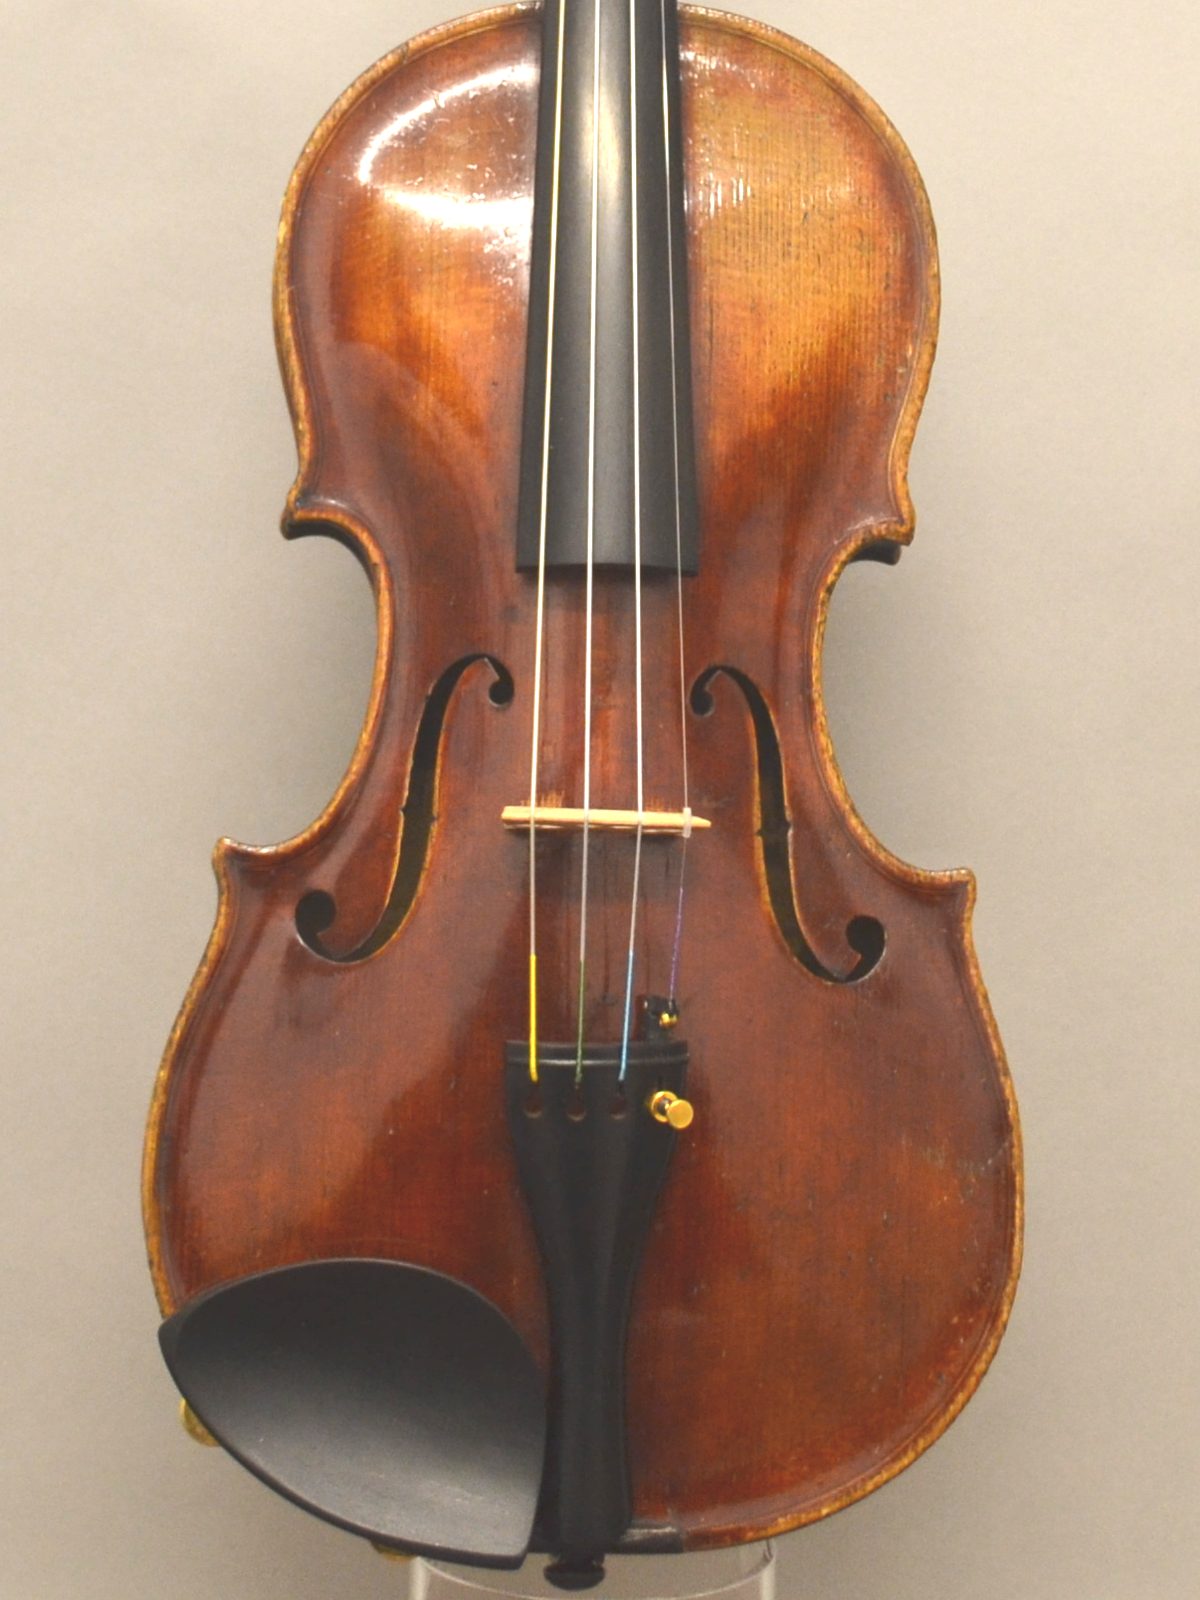 *Homolka Workshop ヴァイオリンのご紹介 1844年にチェコで製作されたヴァイオリン。こちらは当社買い付けヴァイオリンですが、ワンオーナー品。サイズは7/8と女性の方におすすめです。楽器としては小ぶりですが、抜群な鳴りでフルサイズ並みの音量です。 |*型名|Homolka Works […]